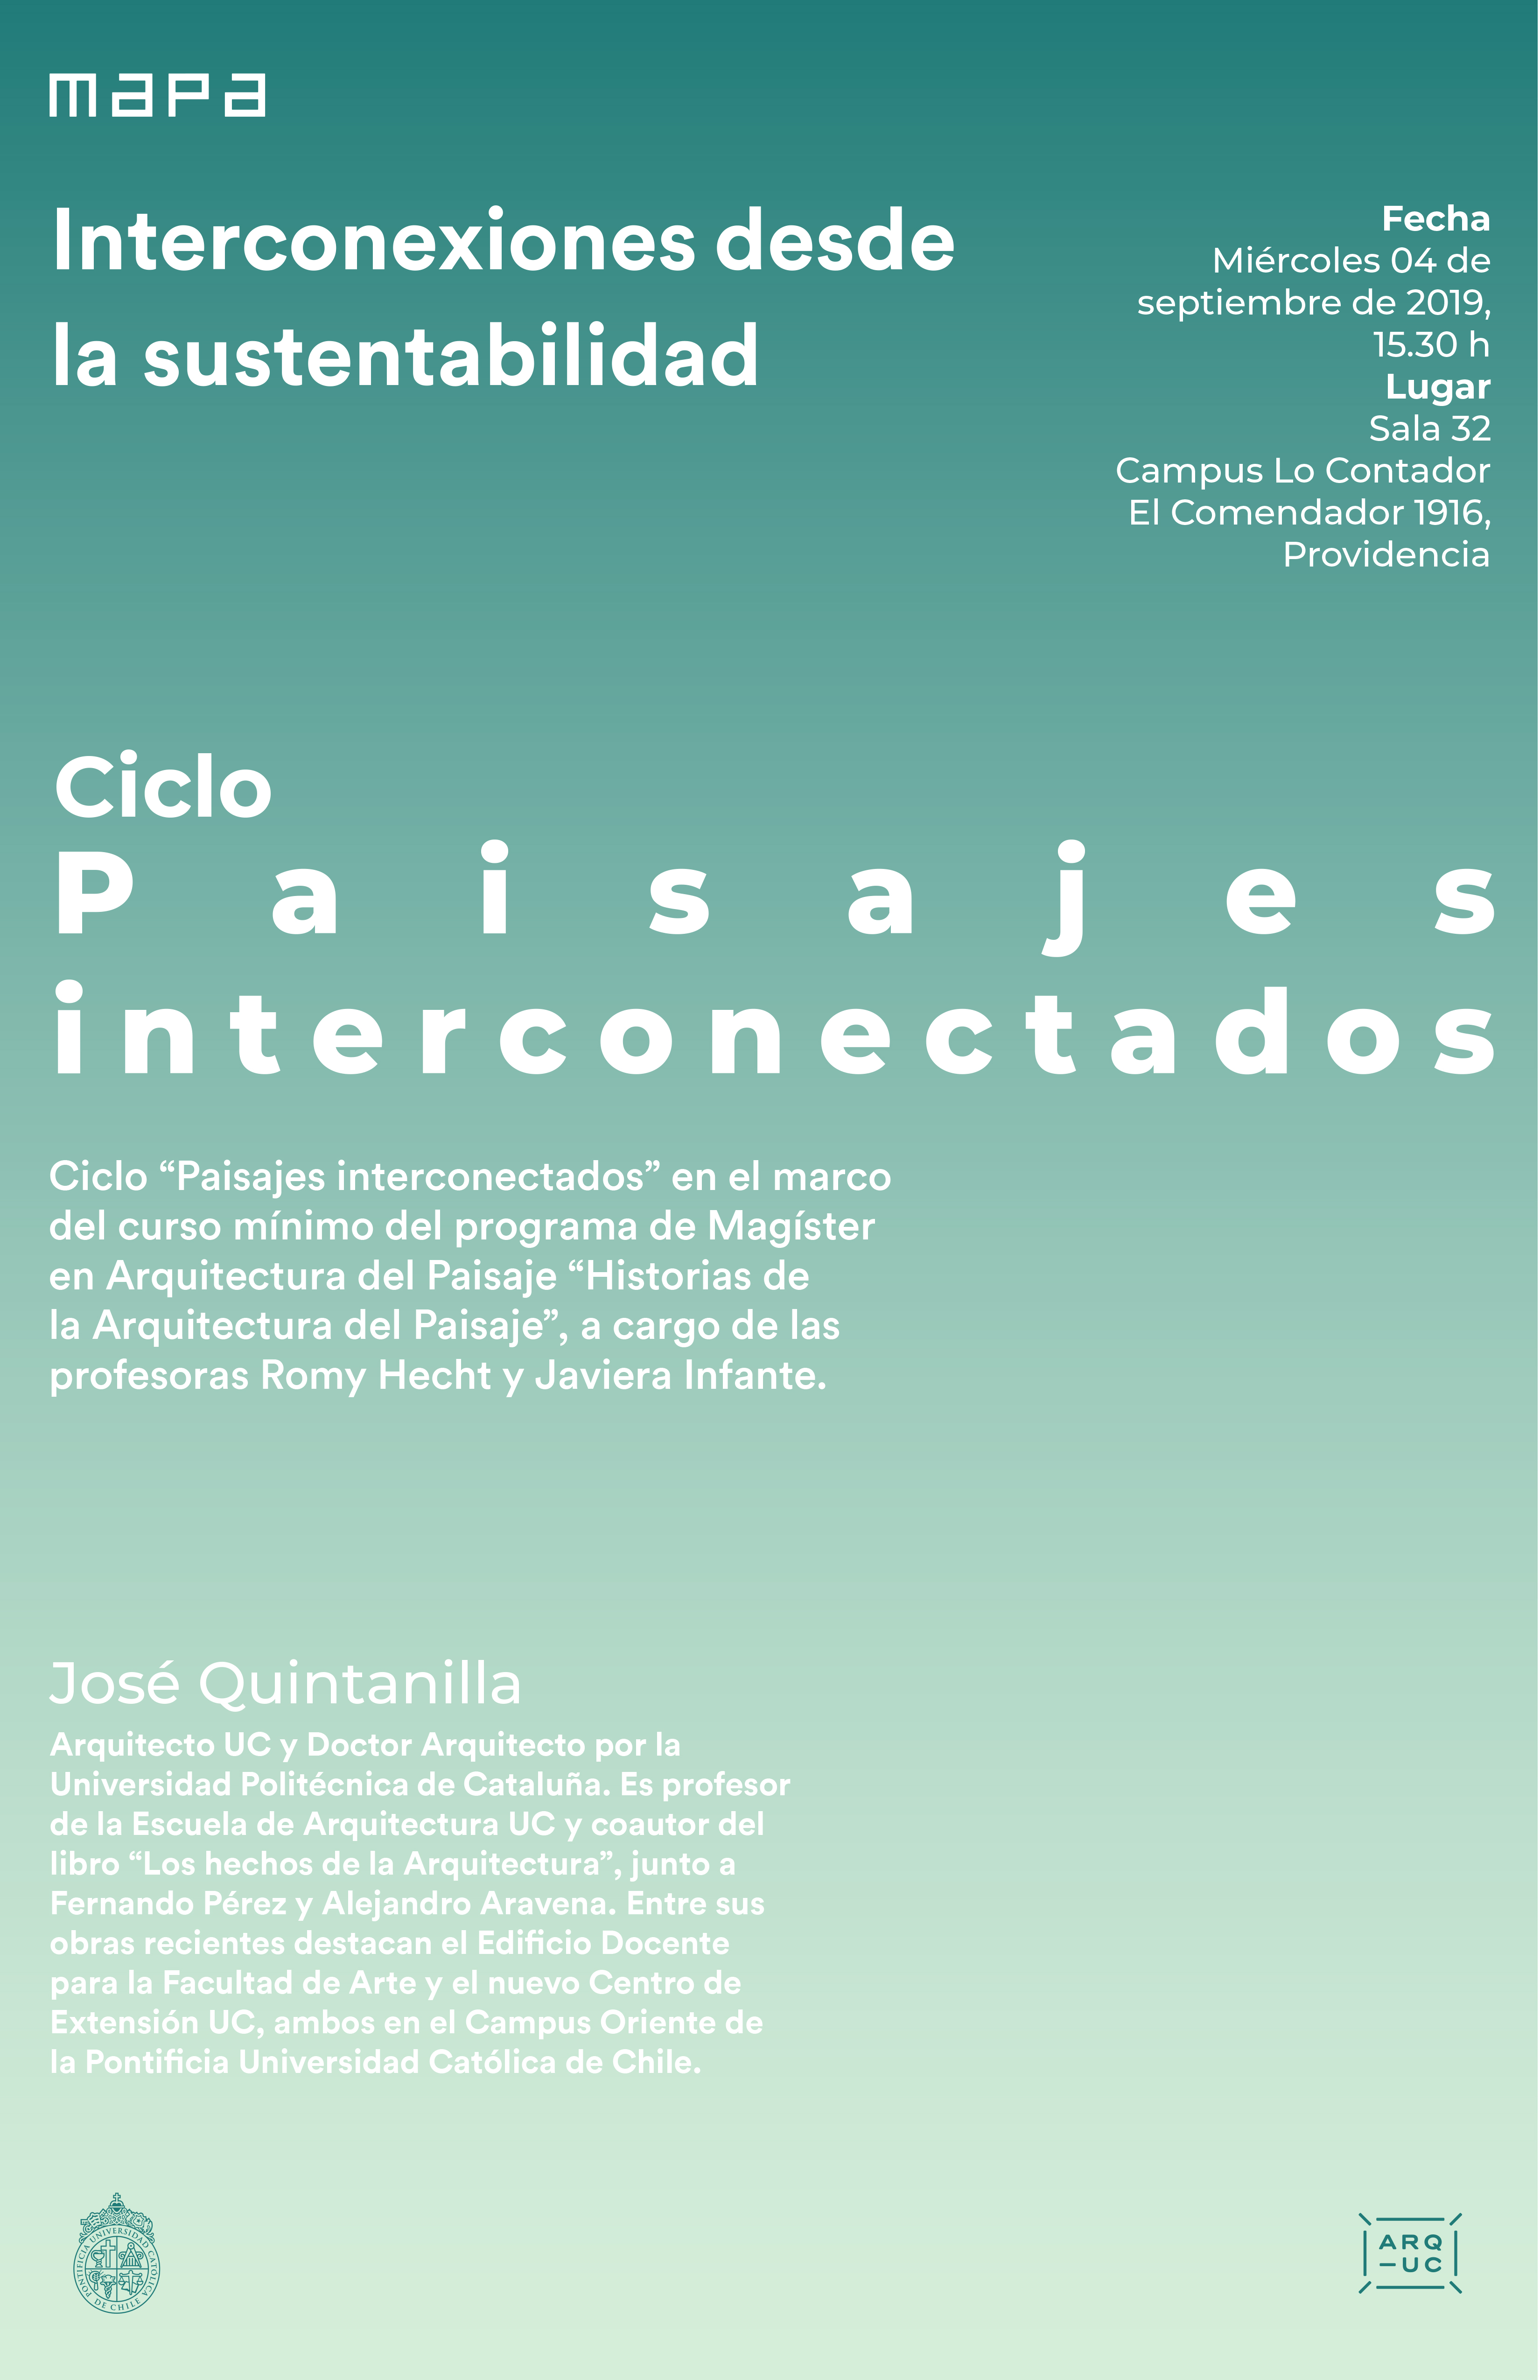 20190830_MAPA__19-09-04_Ciclo_Paisajes_interconectados_Jose_Quintanilla_ALTA.jpg